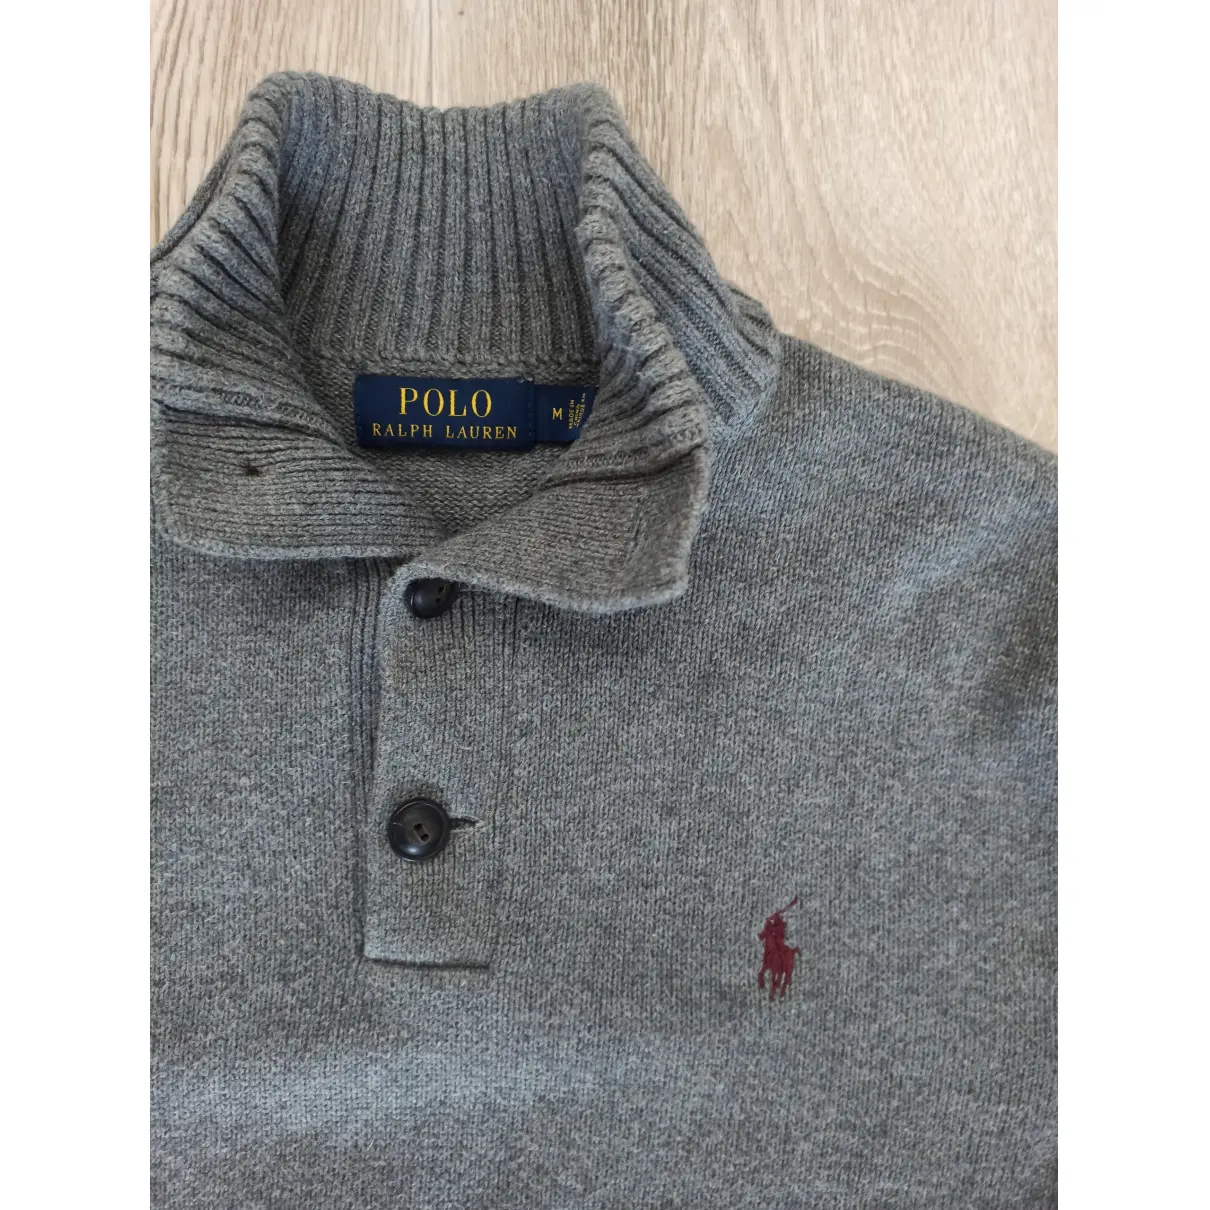 Buy Polo Ralph Lauren Pull online